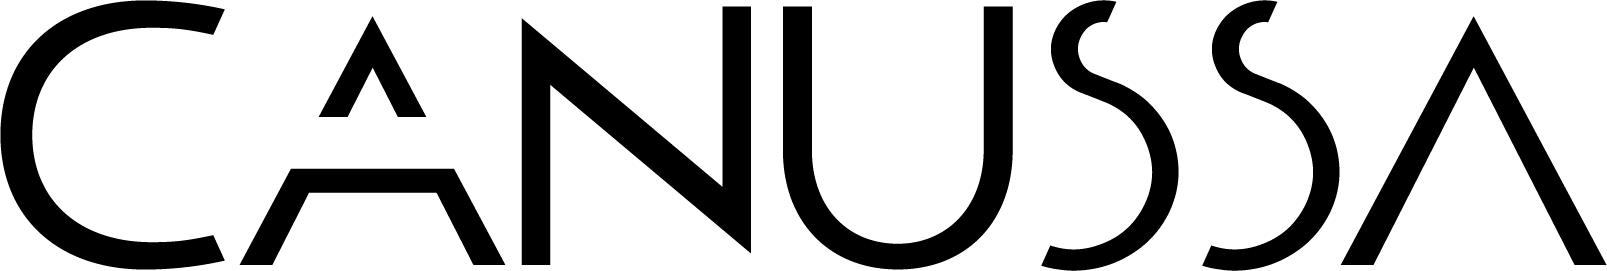 Logo CANUSSA